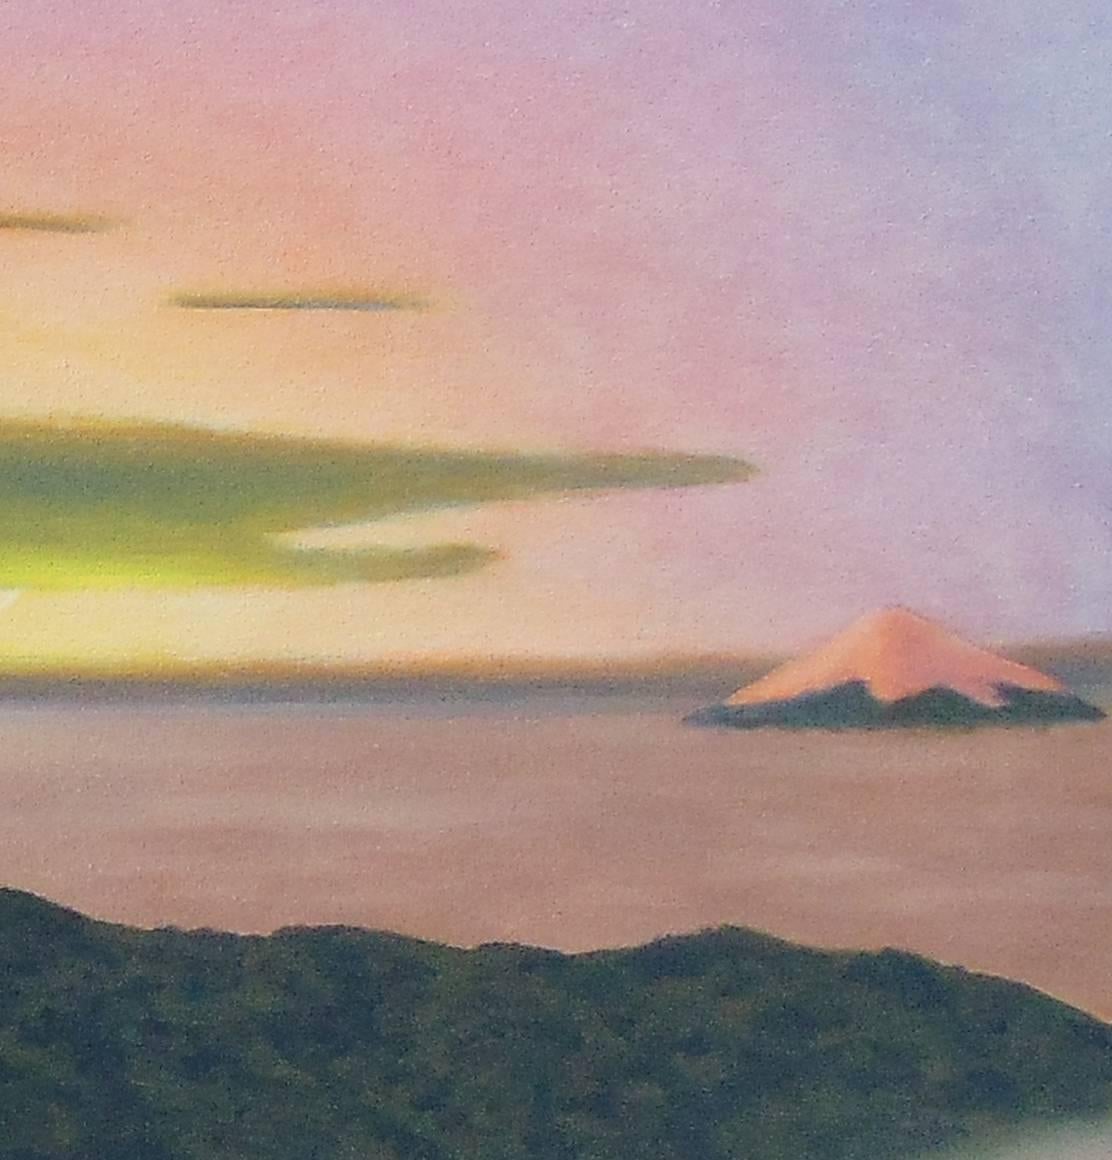 Cayembe (peinture à l'huile contemporaine d'un volcan dans les Andes équatoriennes) - Painting de Bill Sullivan